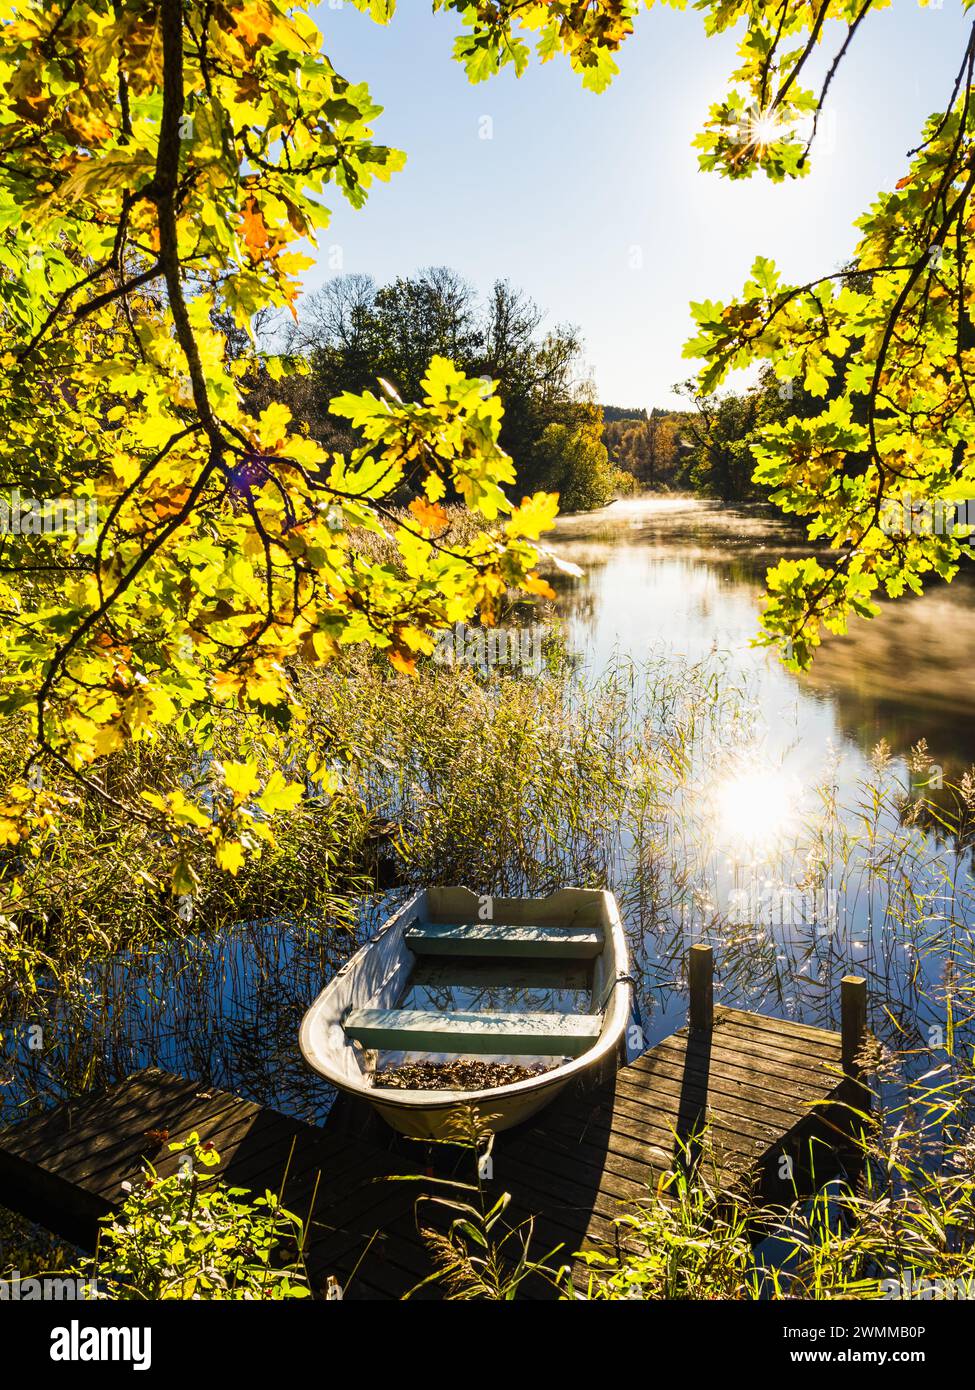 Una tranquilla scena si snoda lungo un fiume in Svezia, dove una barca a remi poggia su un piccolo molo di legno. Circondato dai colori vivaci delle foglie autunnali Foto Stock